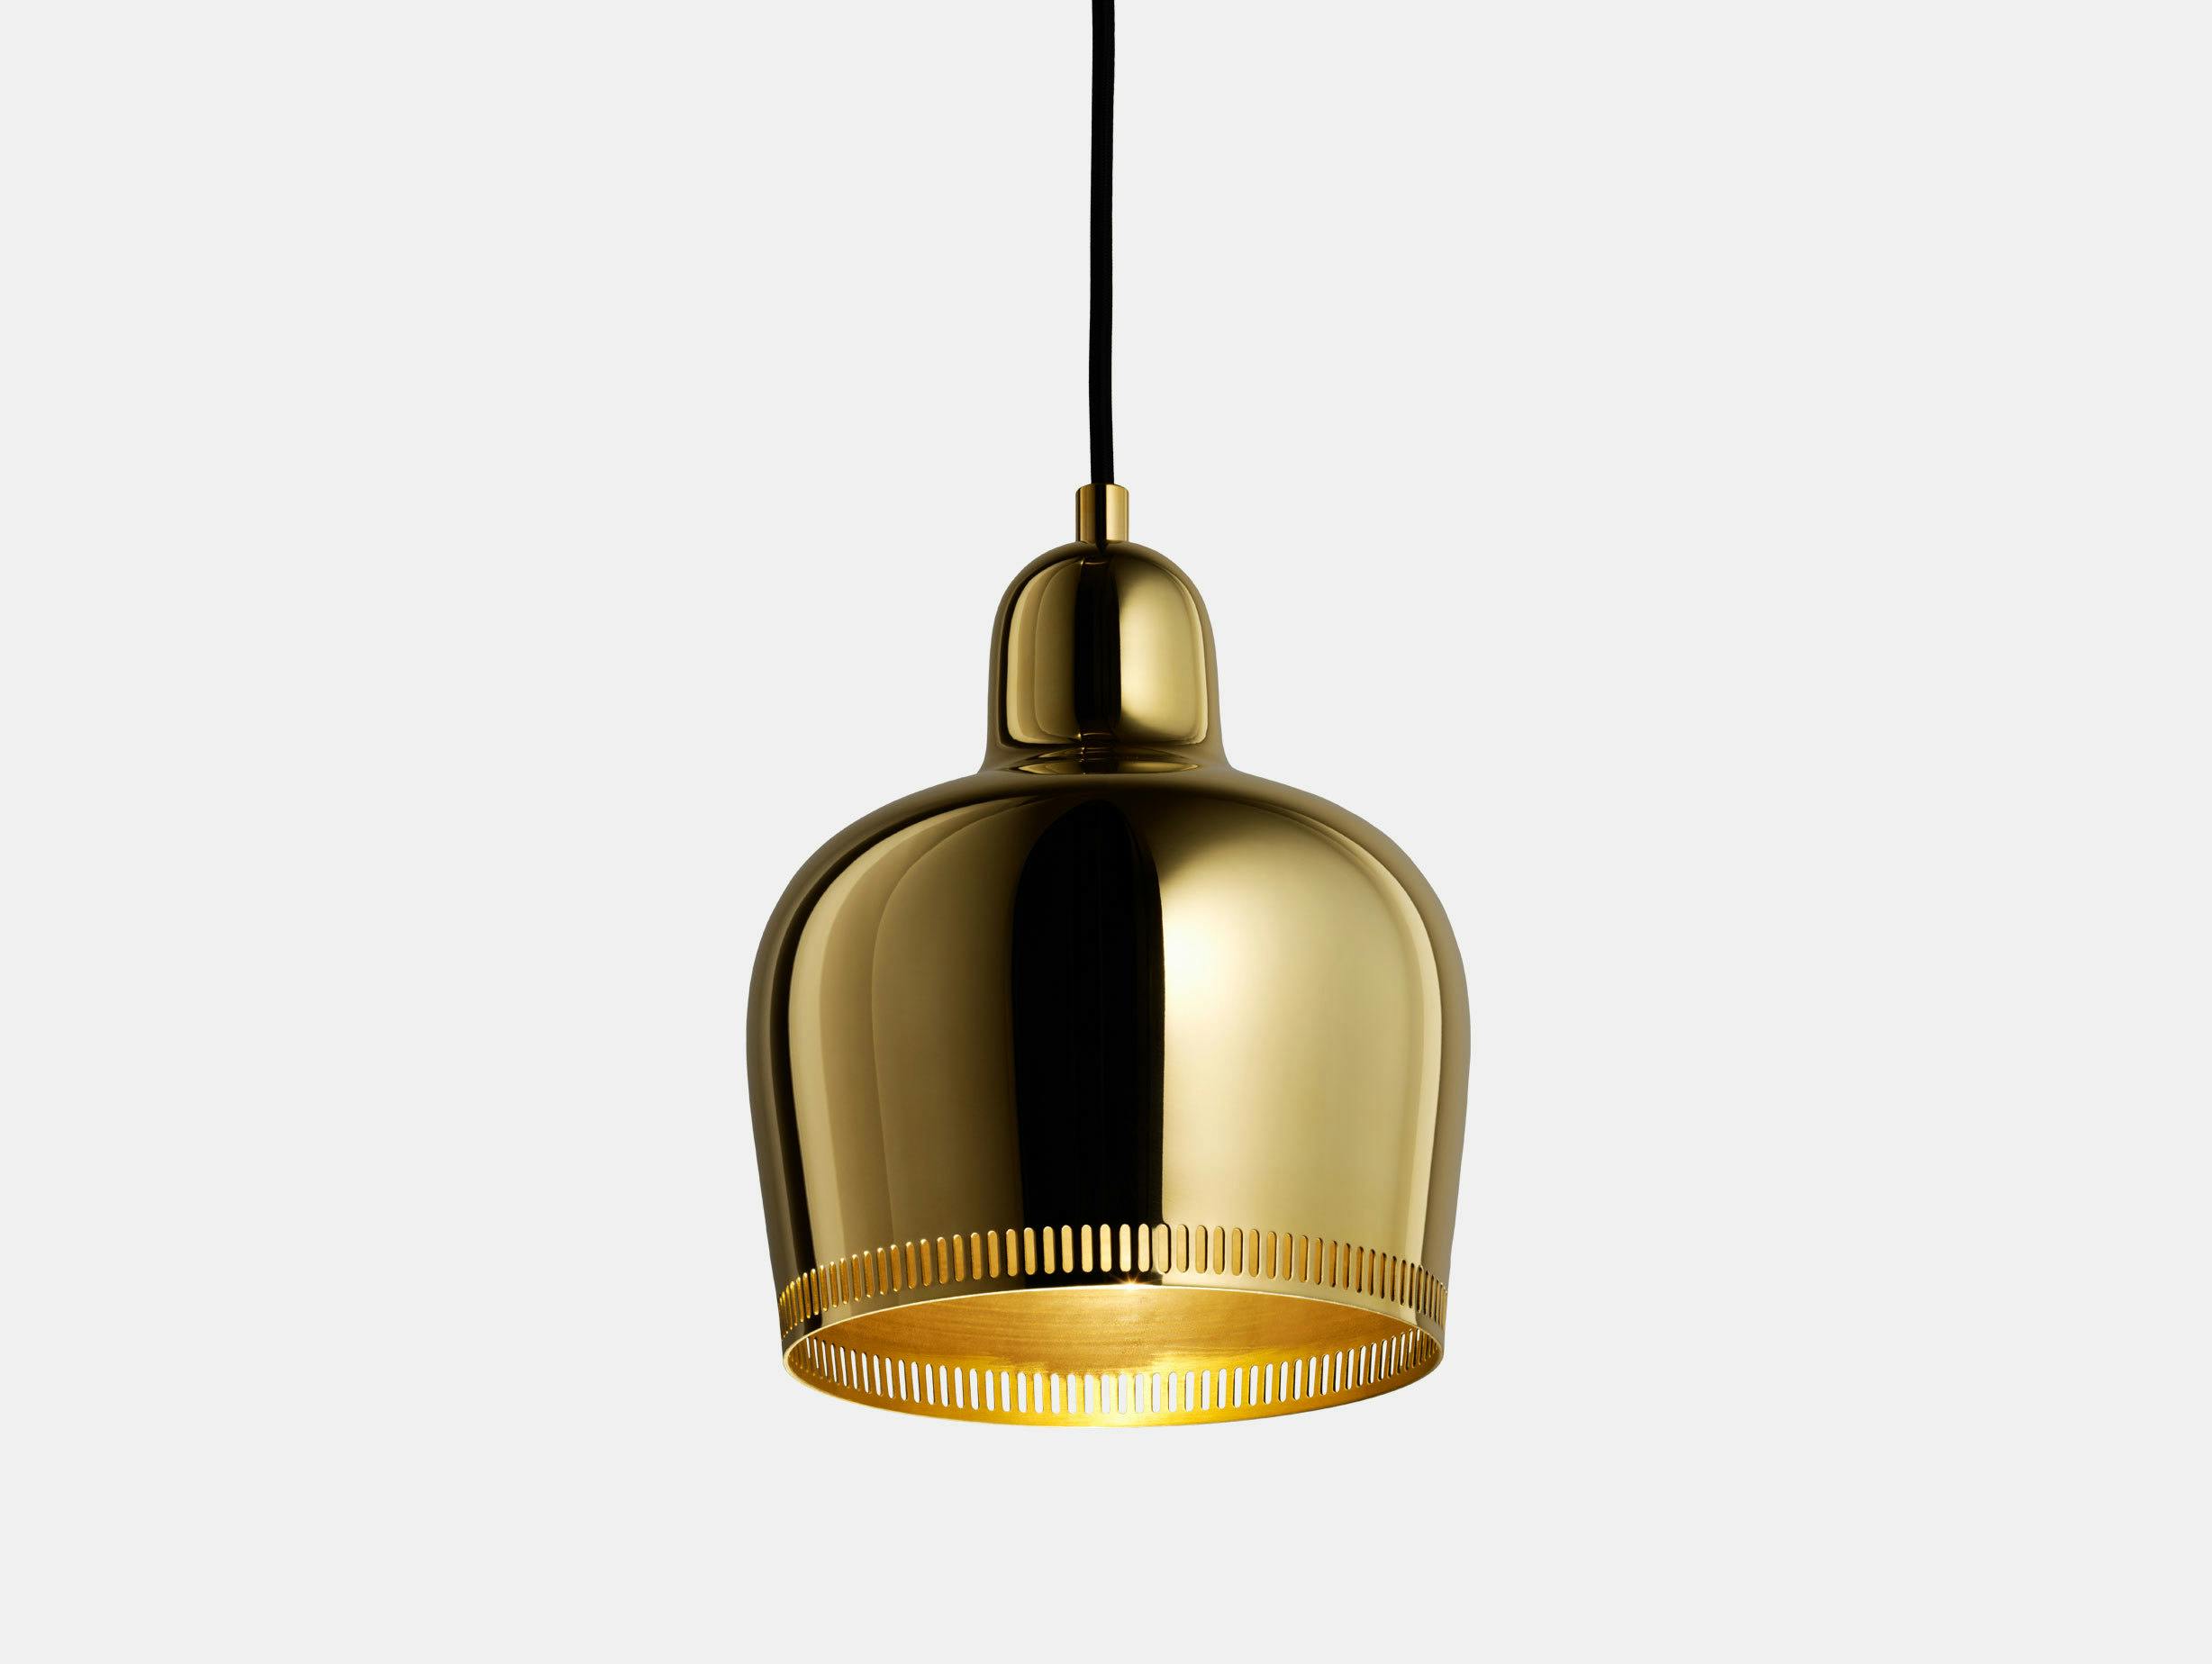 Artek Golden Bell Pendant Light A330 S Brass Savoy Edition Alvar Aalto